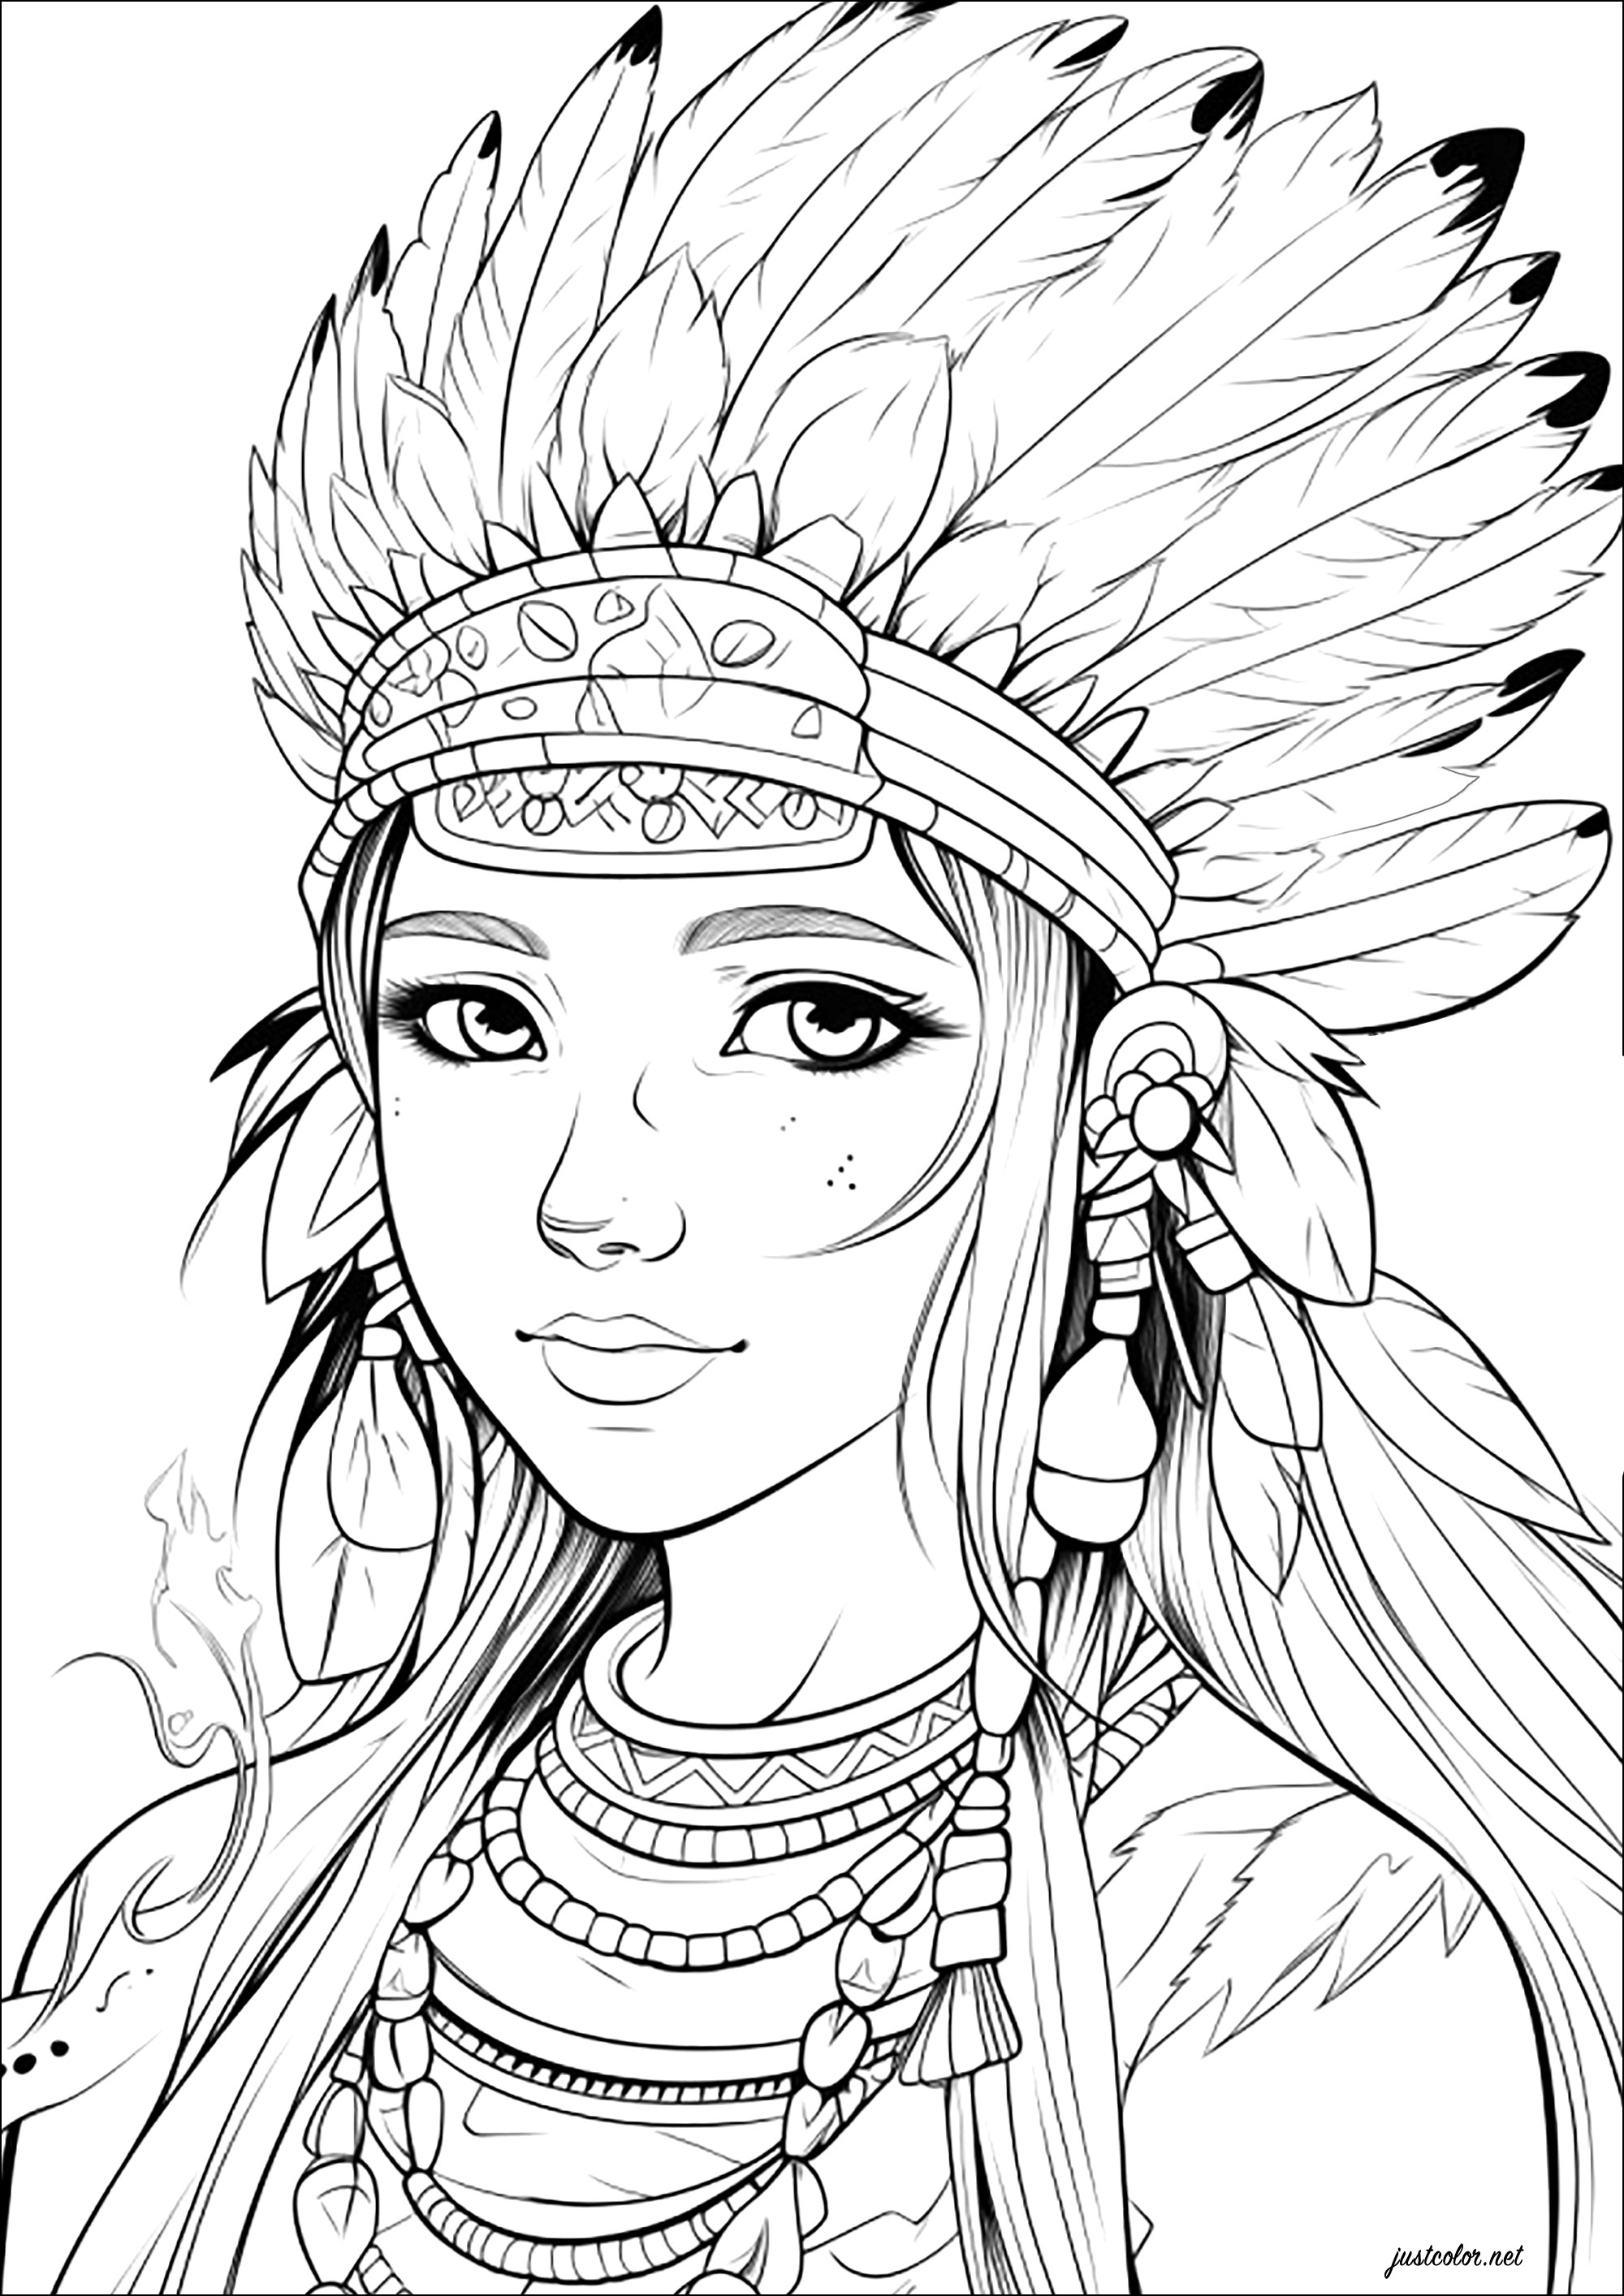 Mulher jovem com toucado nativo americano. Imagina que esta personagem é a filha do chefe de uma tribo de índios americanos, e vais ter uma grande diversão a colorir!